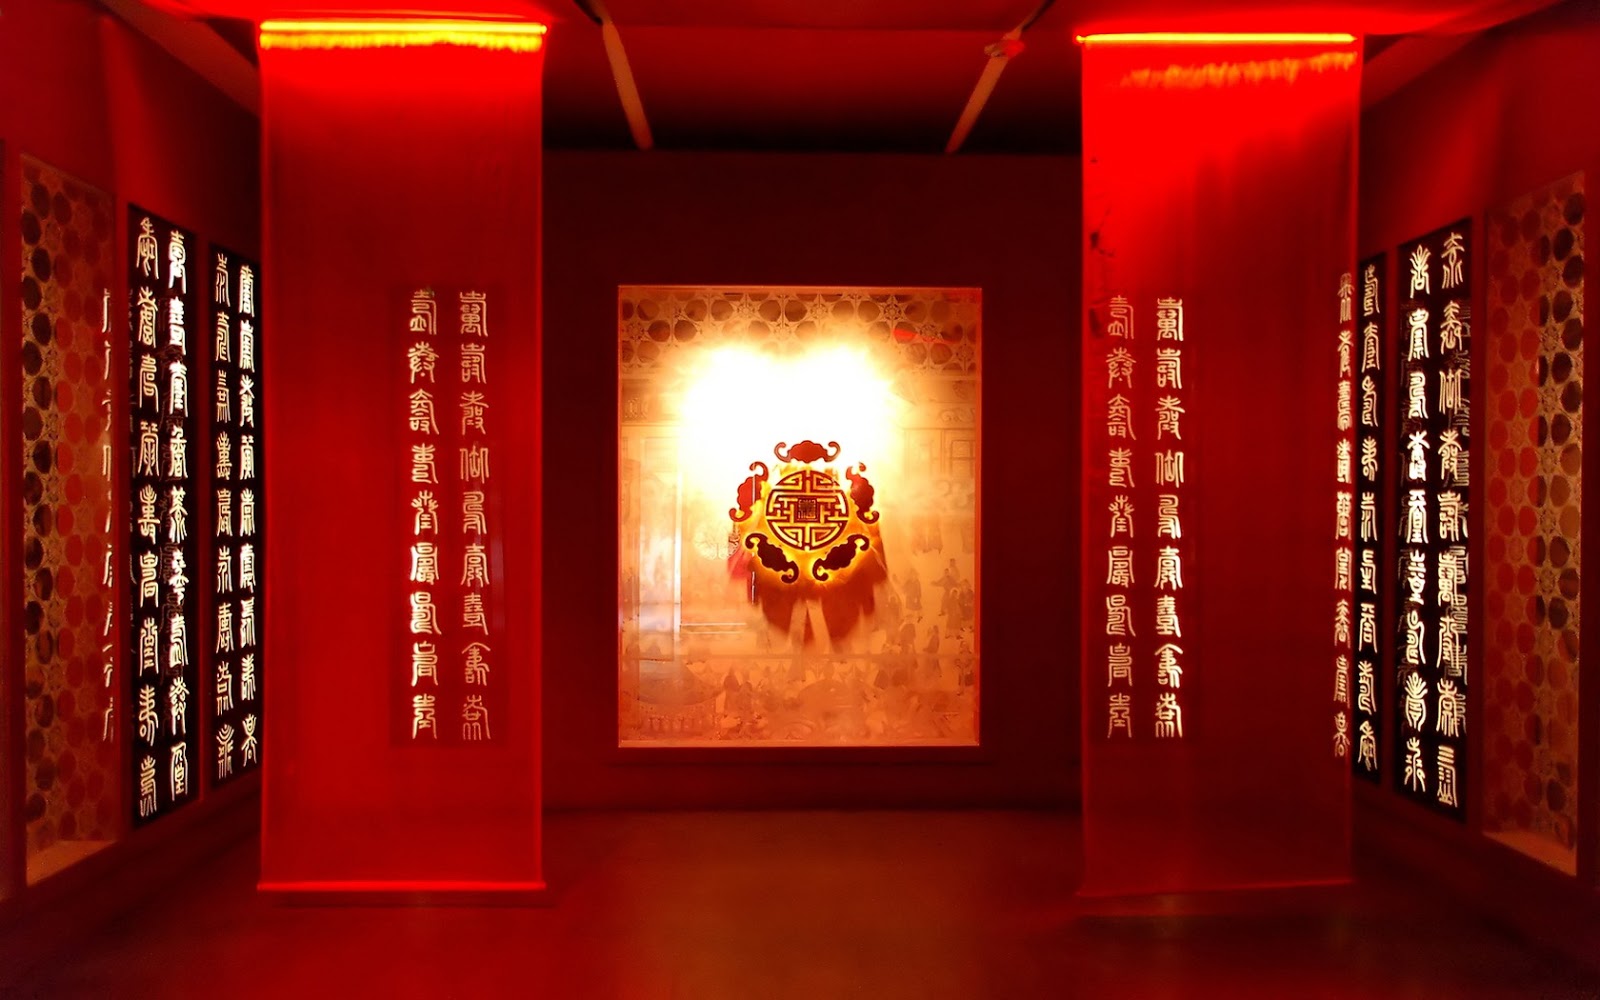 tapete asiatisches design,rot,beleuchtung,licht,zimmer,innenarchitektur